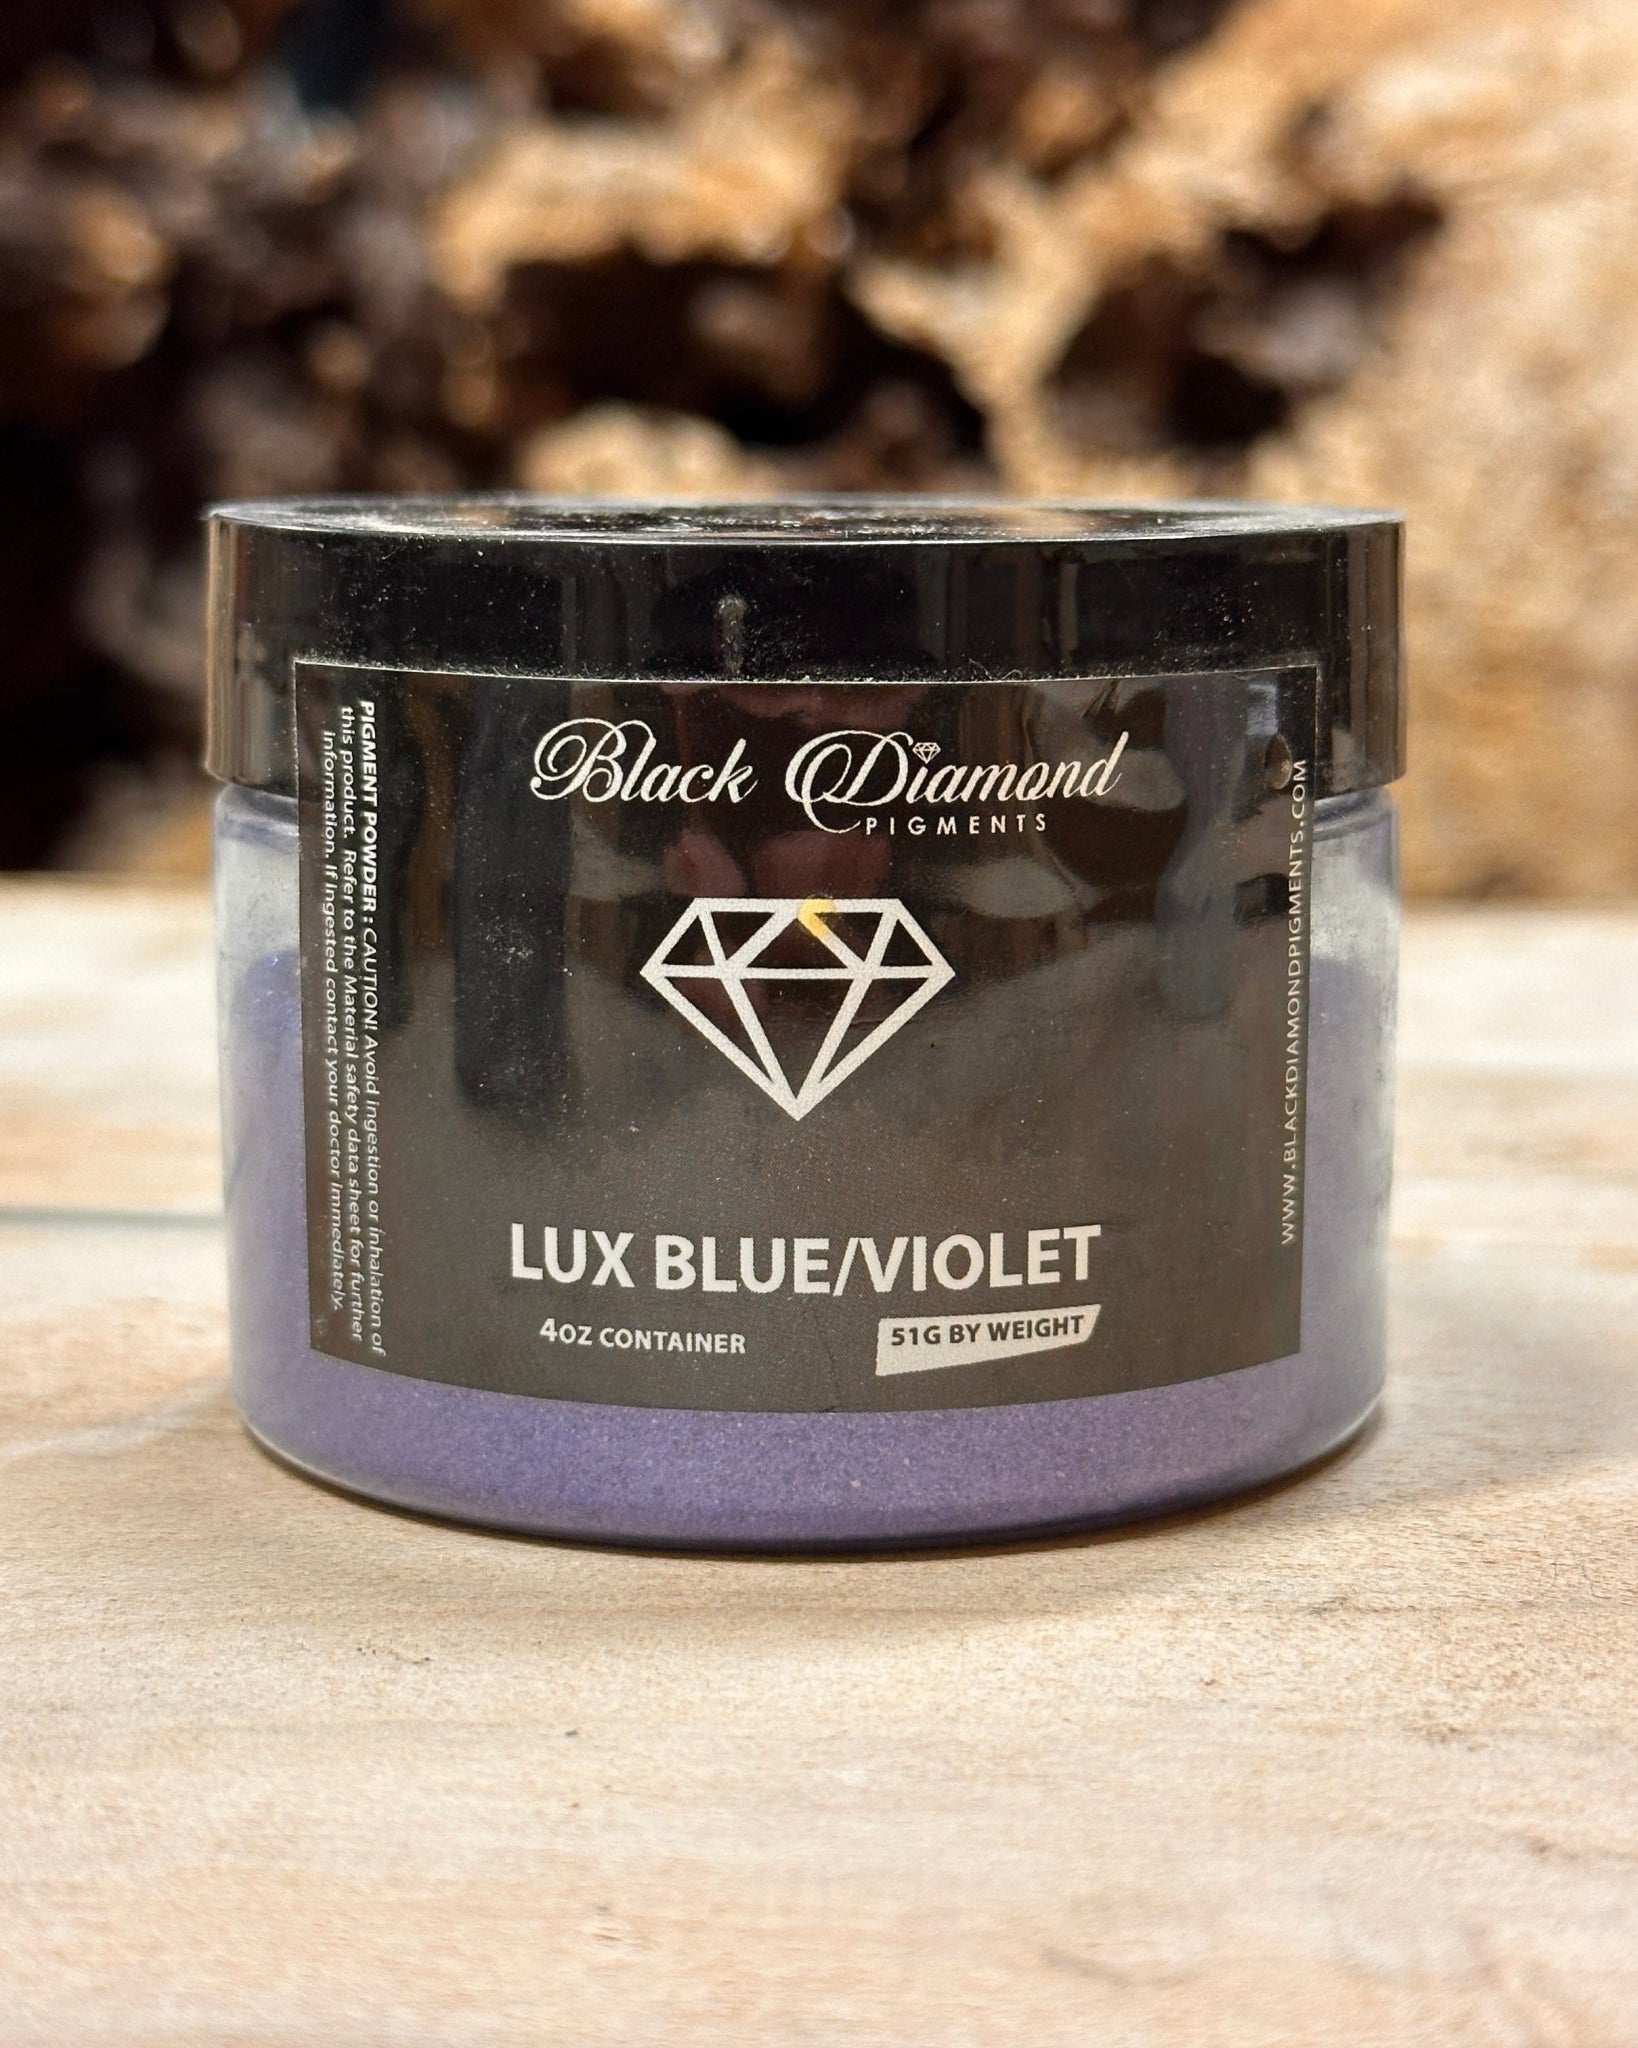 Black Diamond Pigments - Lux Blue/Violet - 51g | Mica Pigment | Black Diamond Pigments